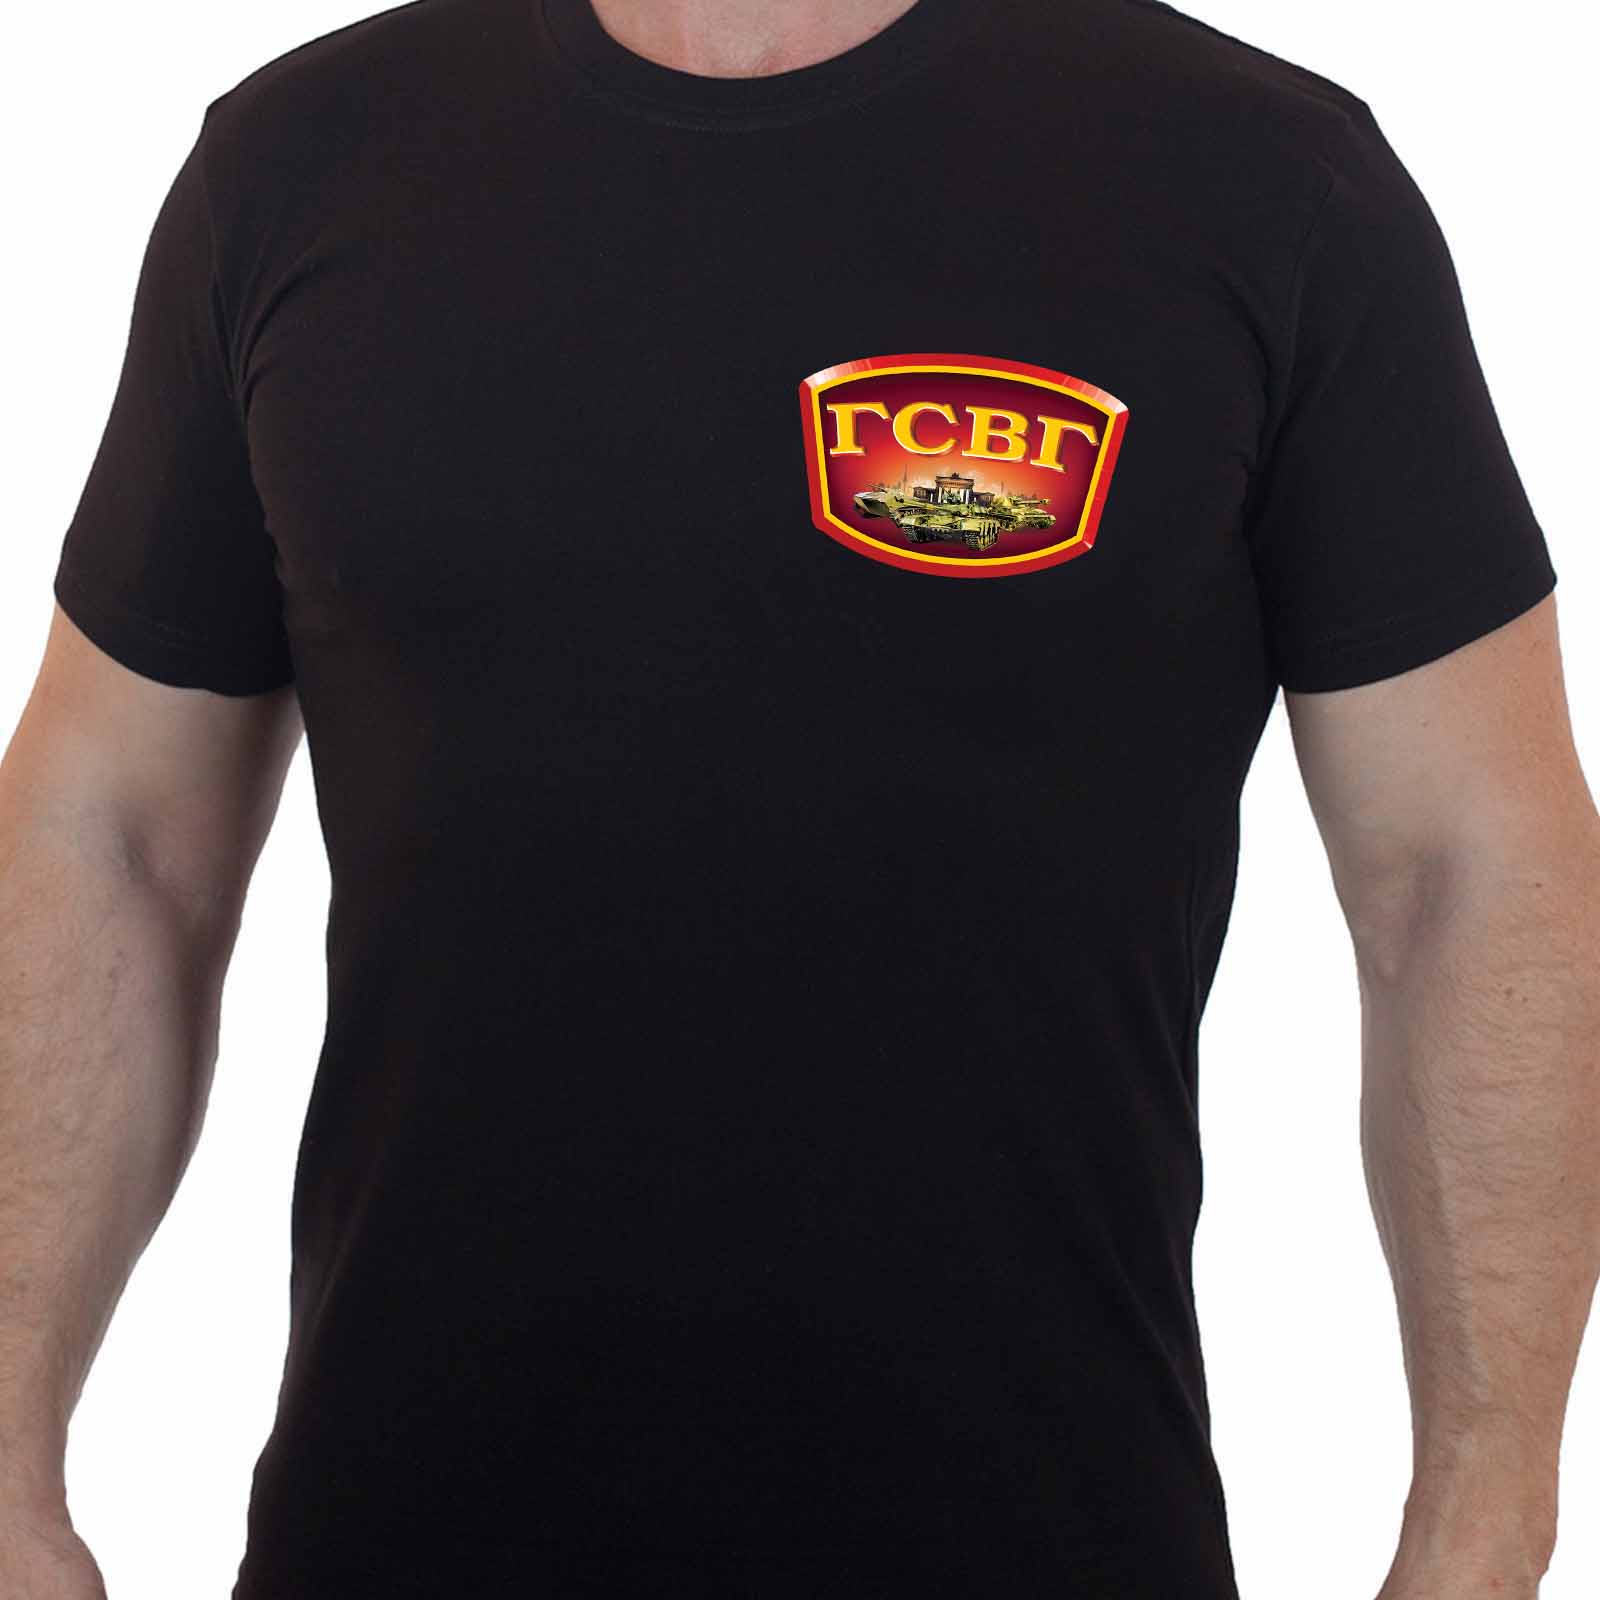 Купить лаконичную черную футболку с эмблемой ГСВГ с доставкой в ваш город